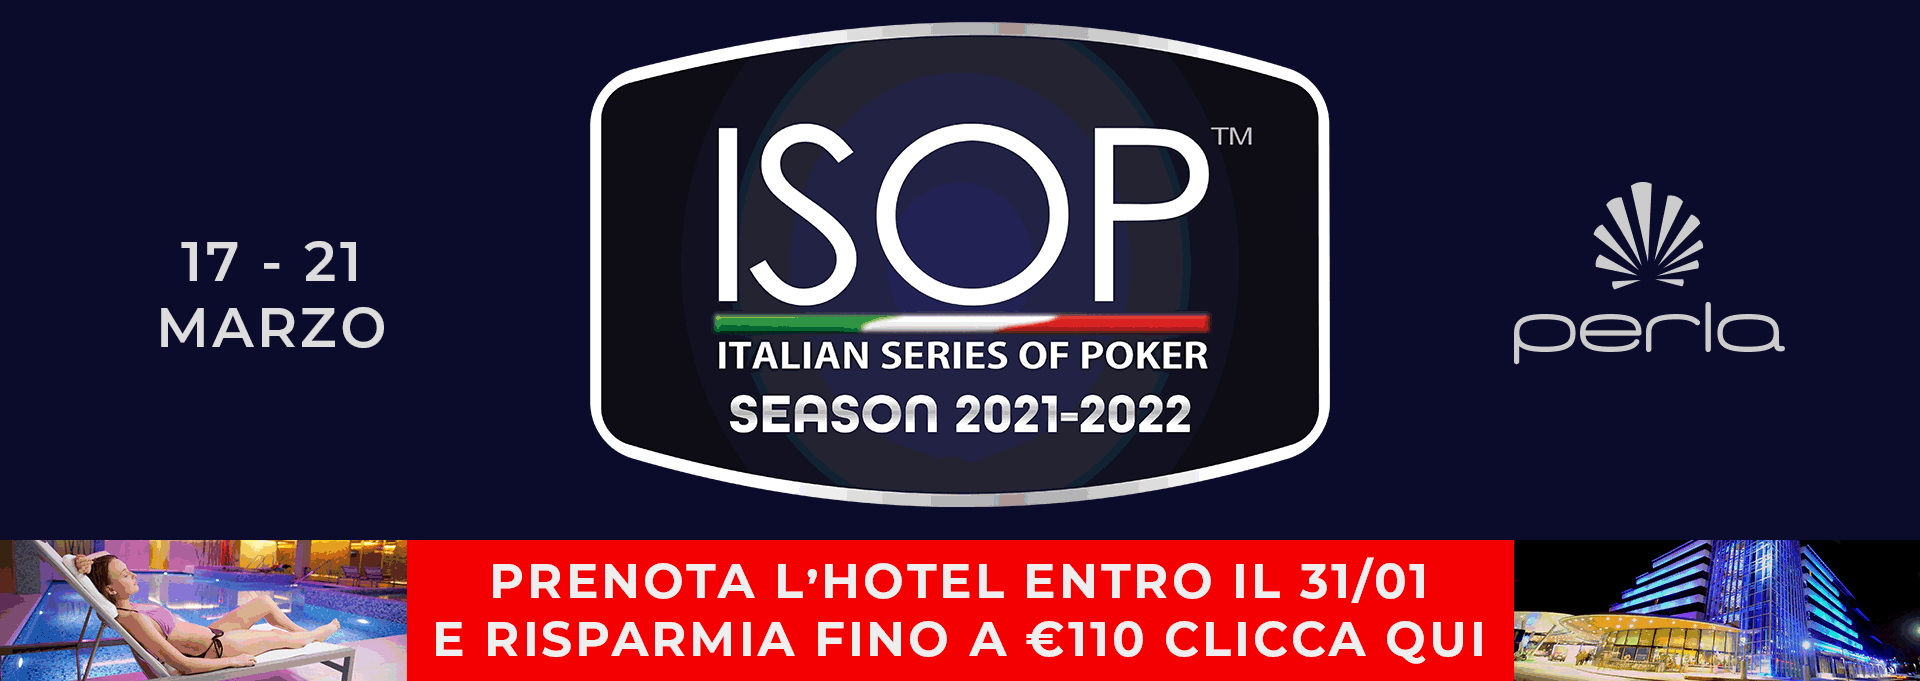 ISOP Season 2021-2022 evento 3